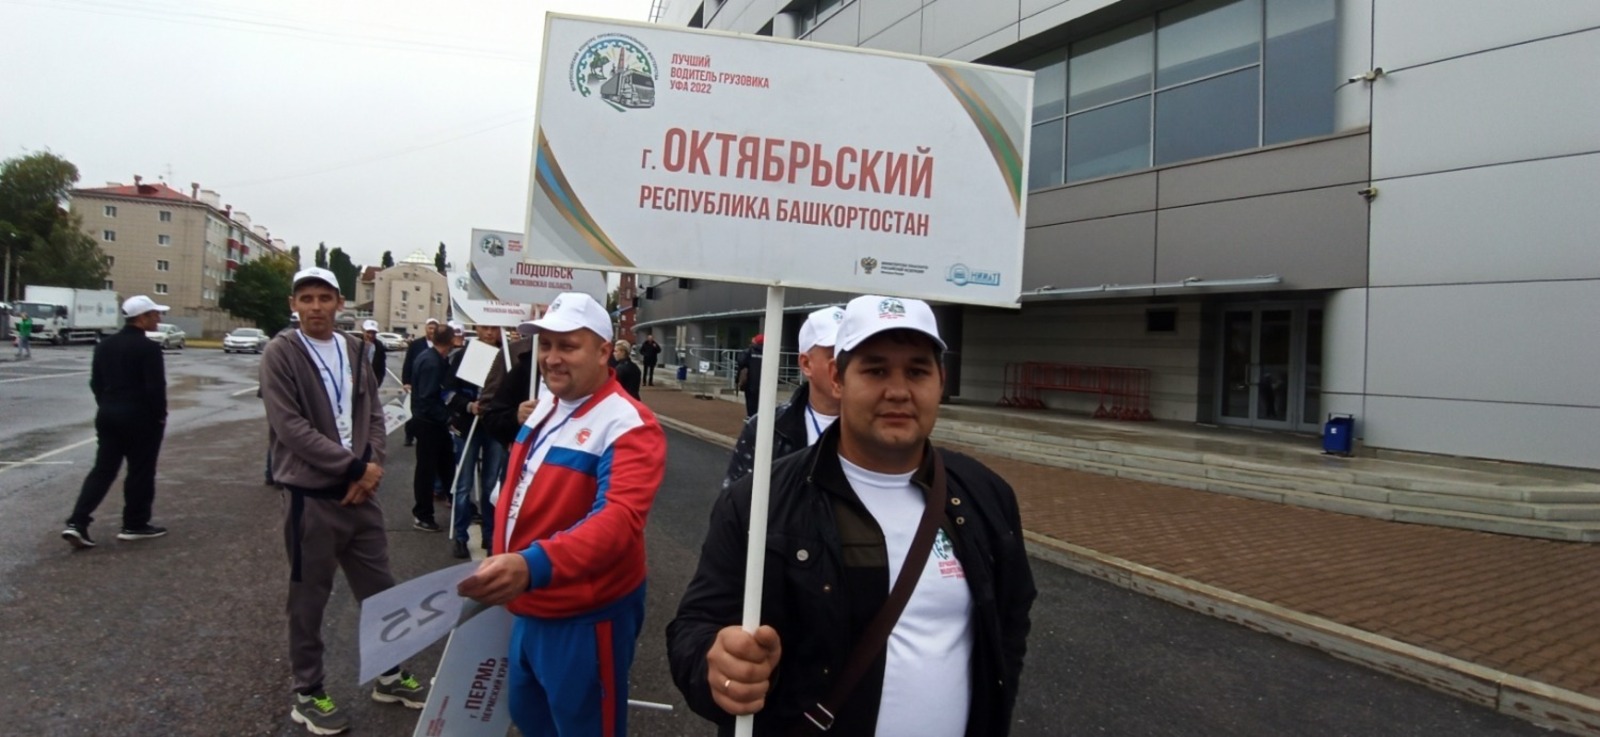 В столице Башкортостана проходит всероссийский конкурс водителей грузовиков